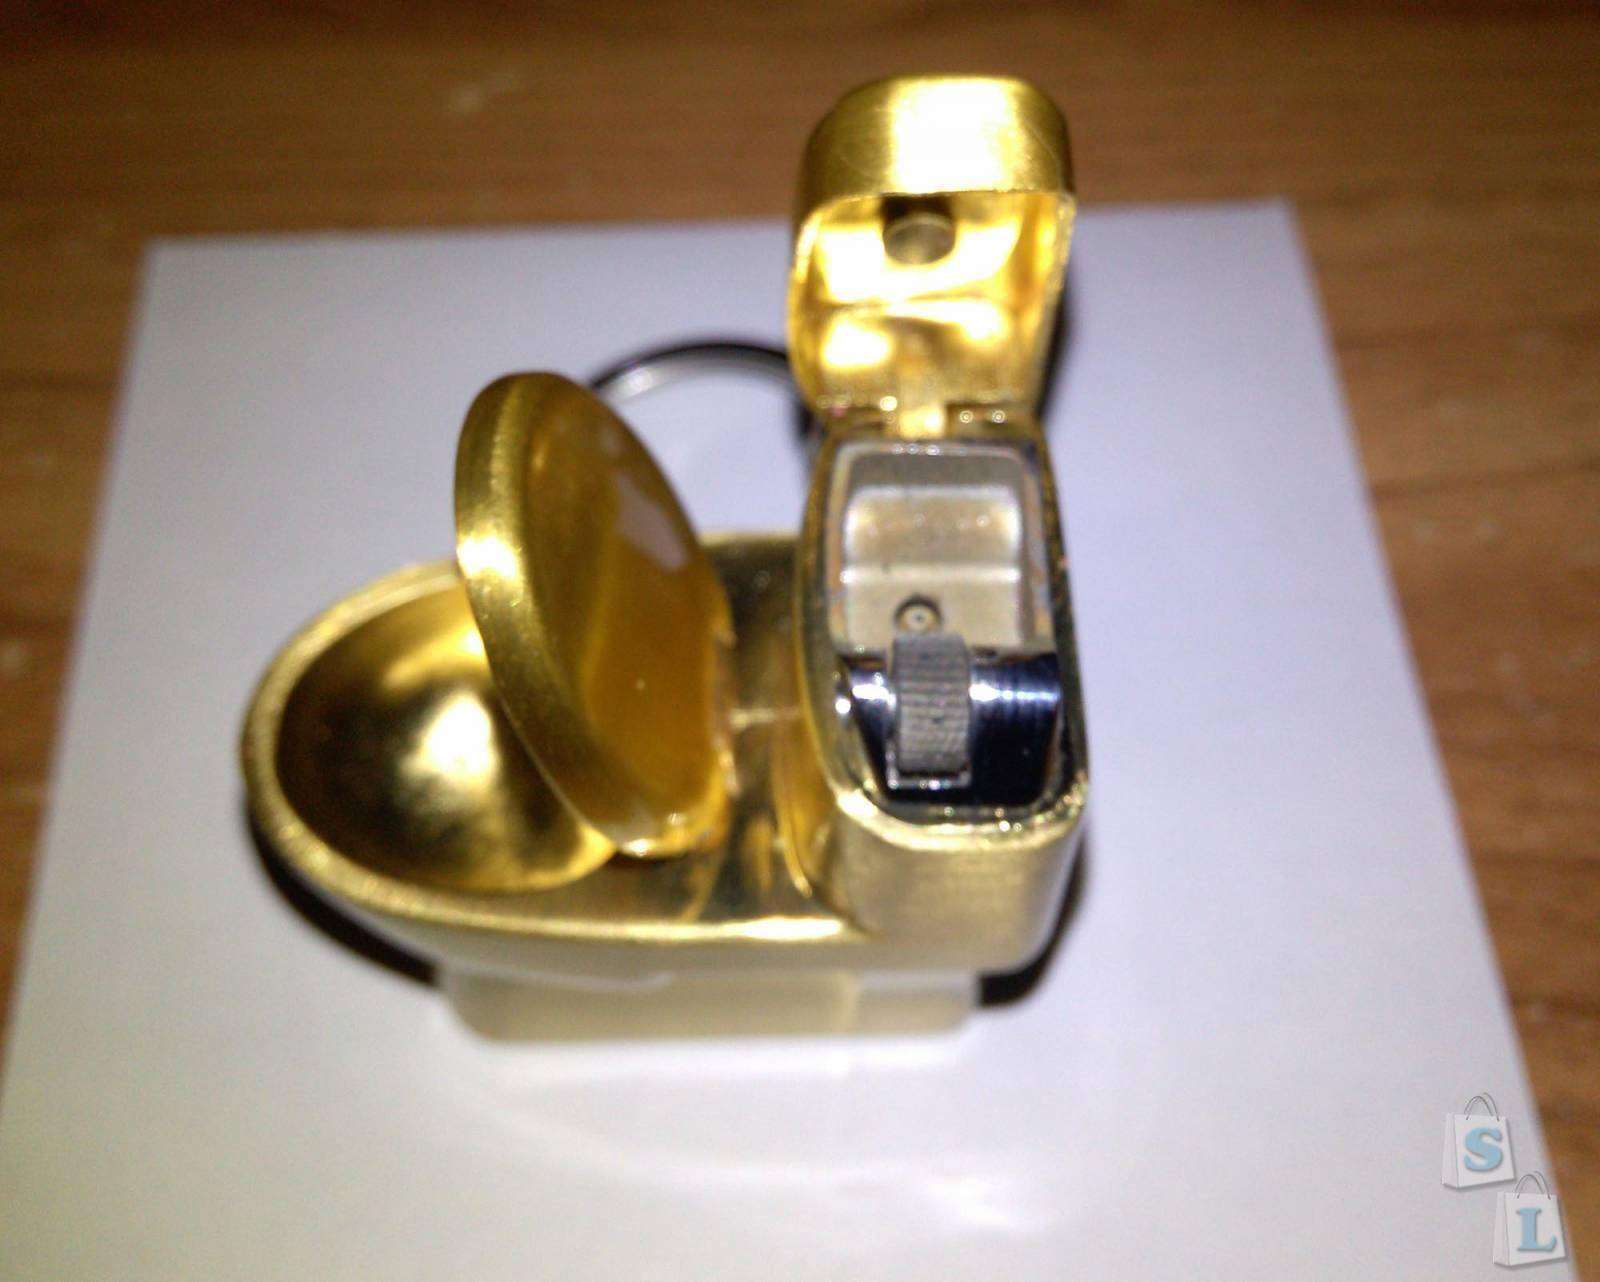 TinyDeal: Зажигалка - золотой унитаз, почти! Или прикурить от унитаза!